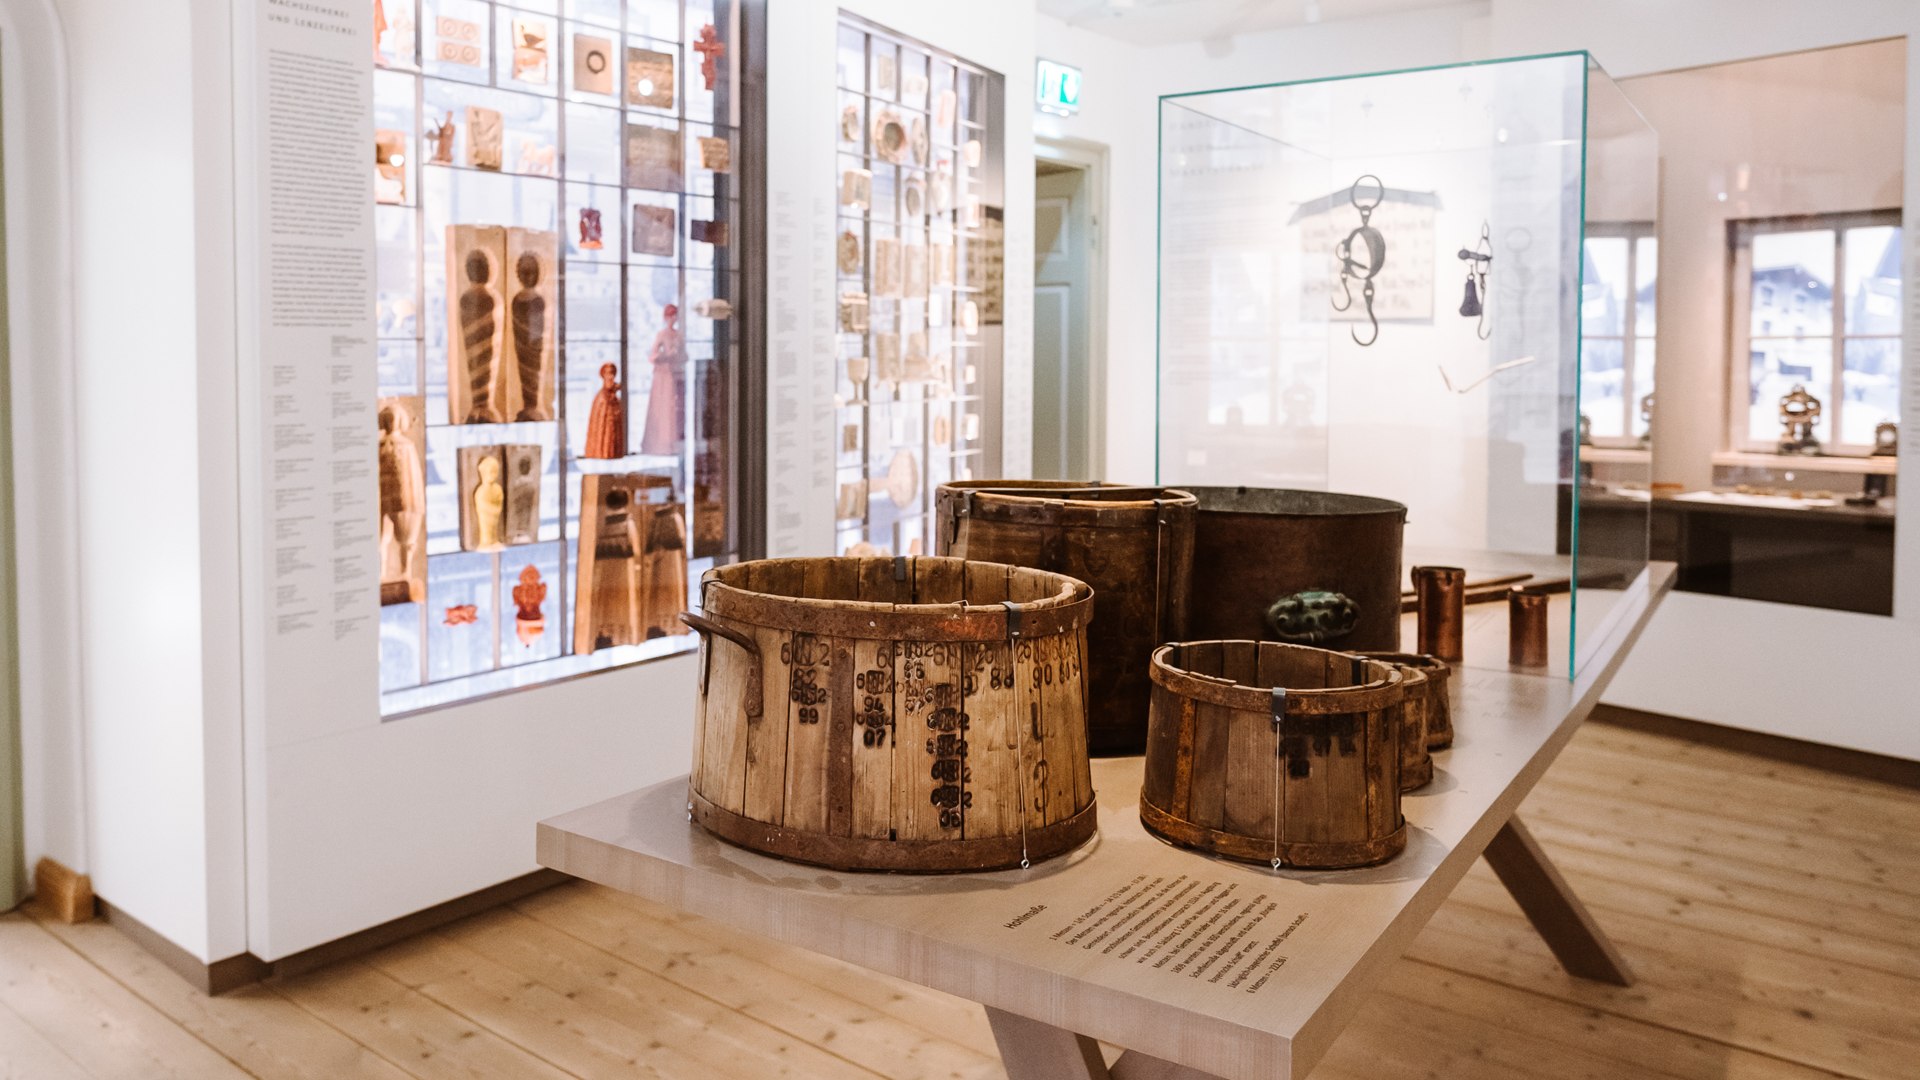 Ausstellungsraum mit Holzbottichen im Museum der Stadt Bad Tölz, © Tölzer Land Tourismus|Leonie Lorenz